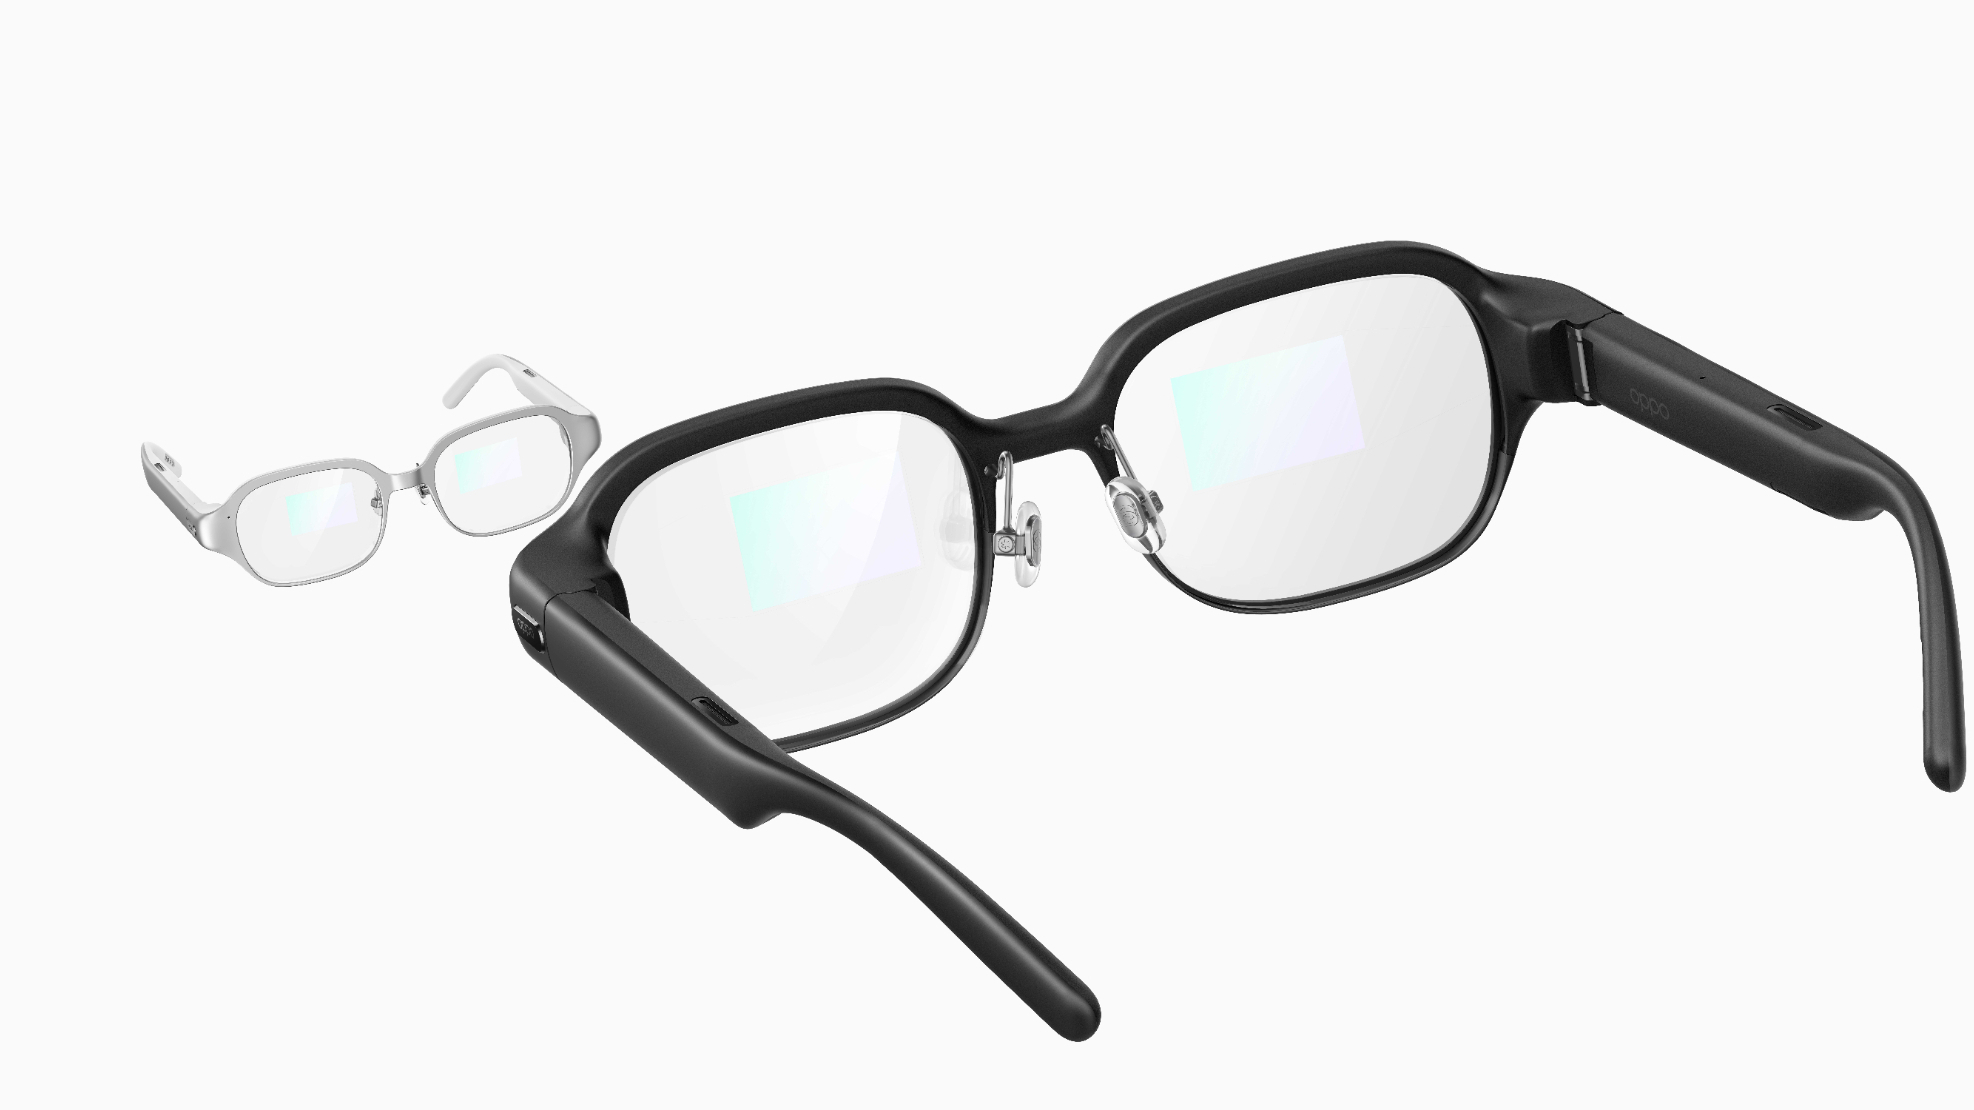 Не надейтесь на лапы
Впечатляющие новые очки AR от Oppo